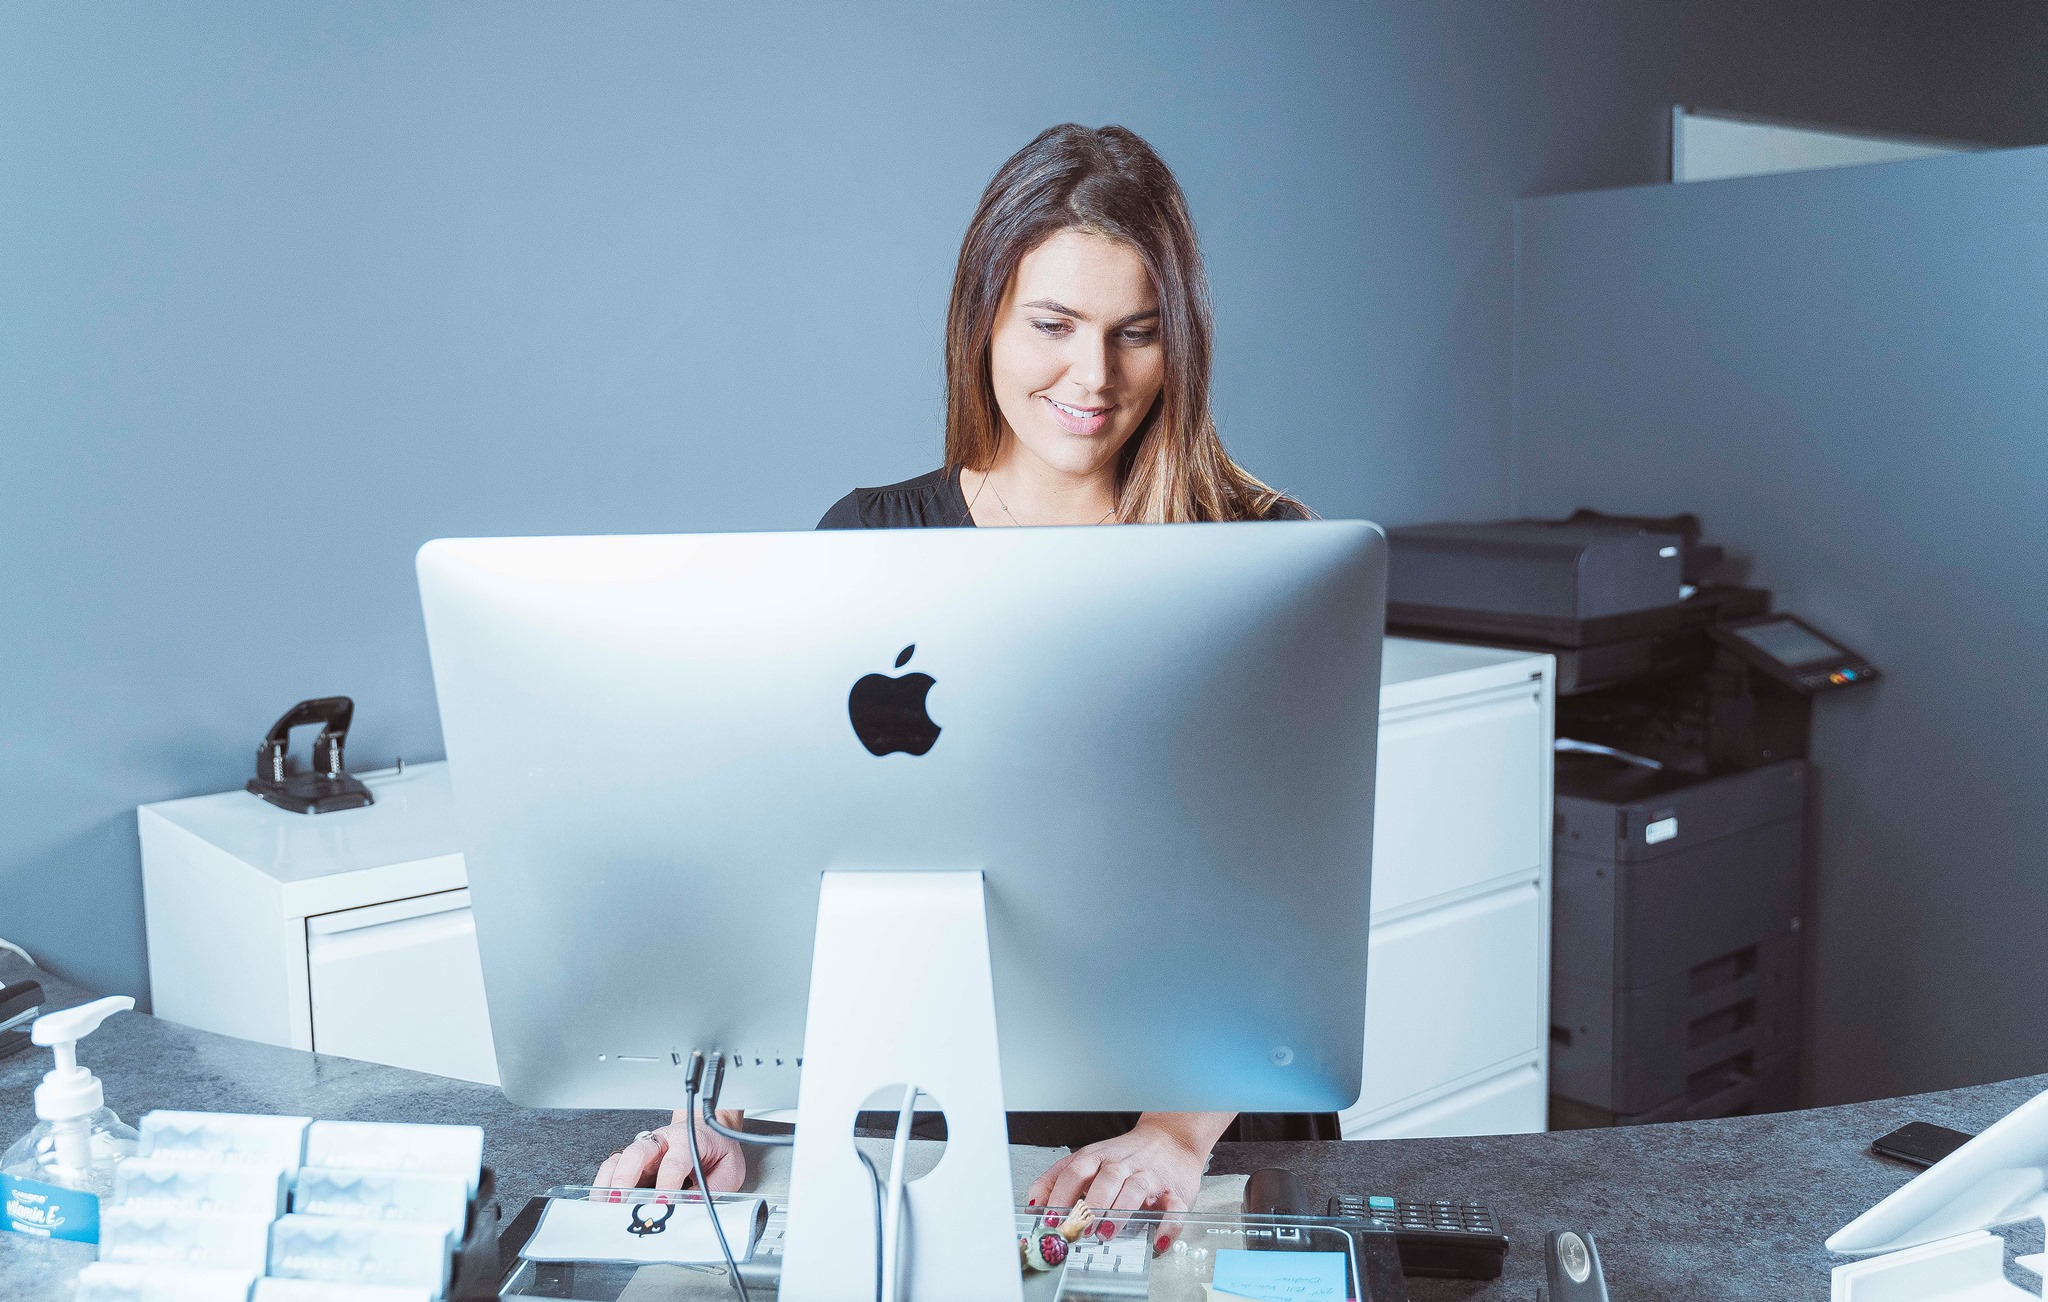 gabrielle working behind apple desktop computer